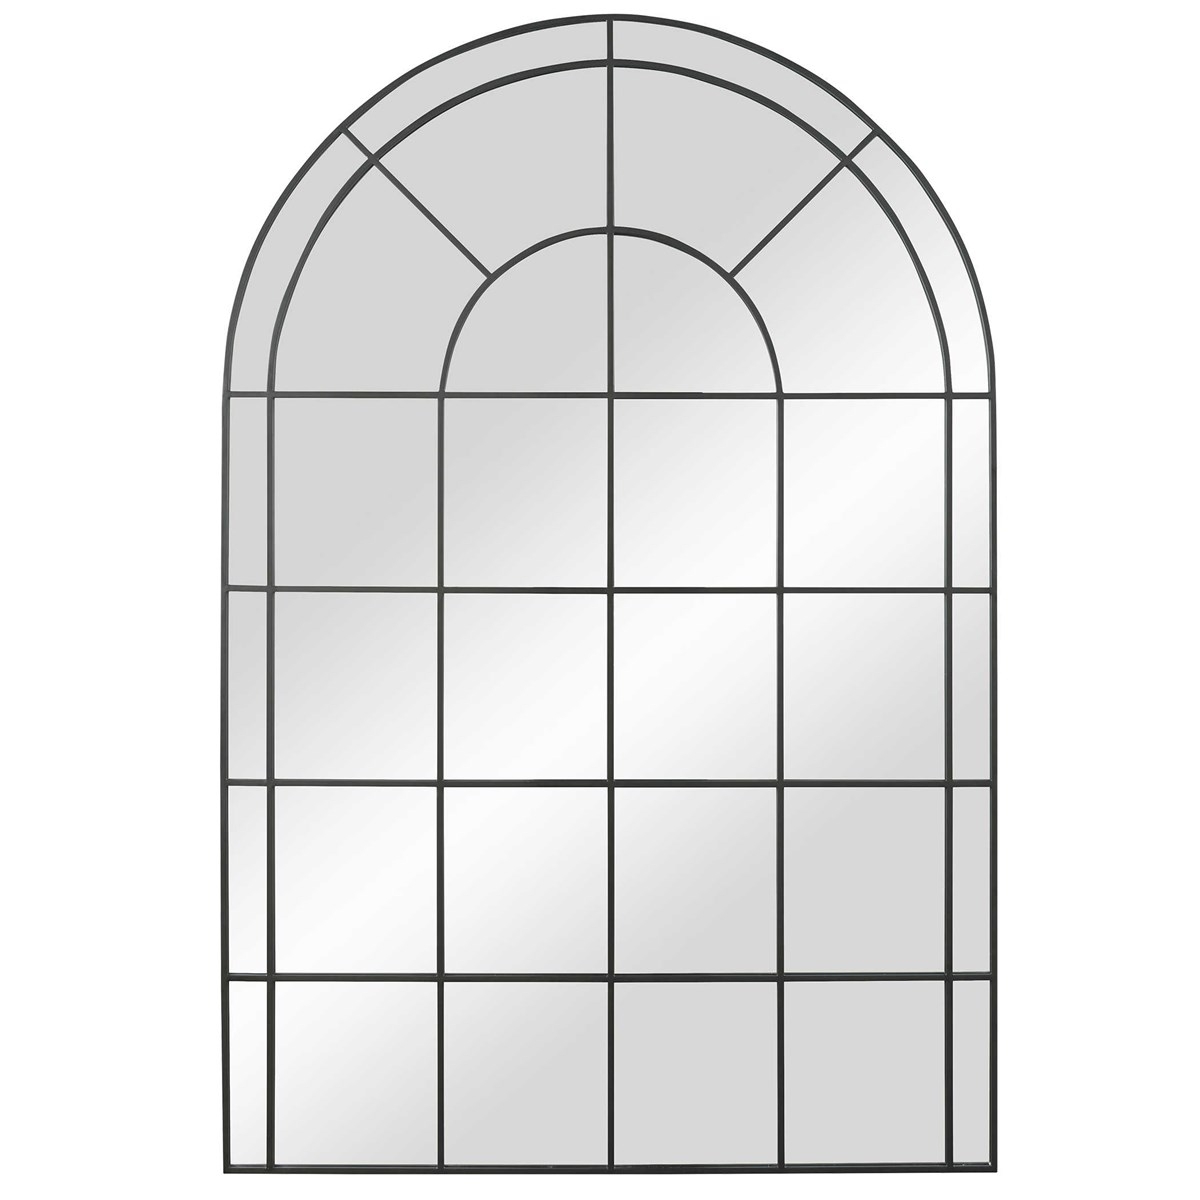 Grantola Arch Mirror, Black - Image 0